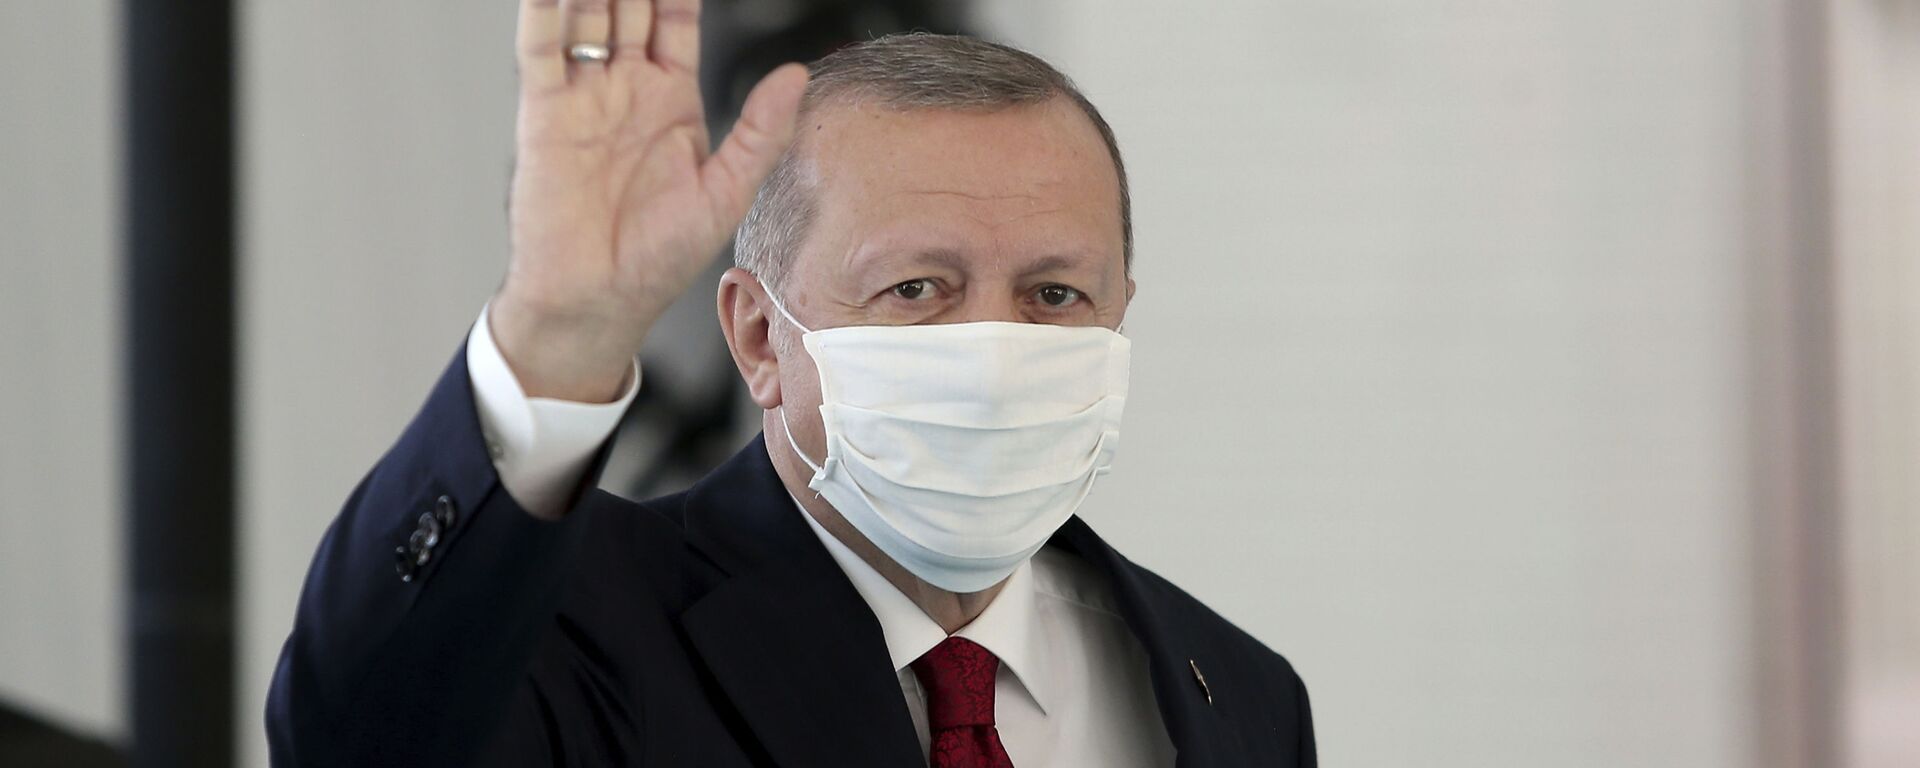 Президент Турции Реджеп Тайип Эрдоган в защитной медицинской маске в одном из госпиталей Стамбула - Sputnik Latvija, 1920, 30.06.2021